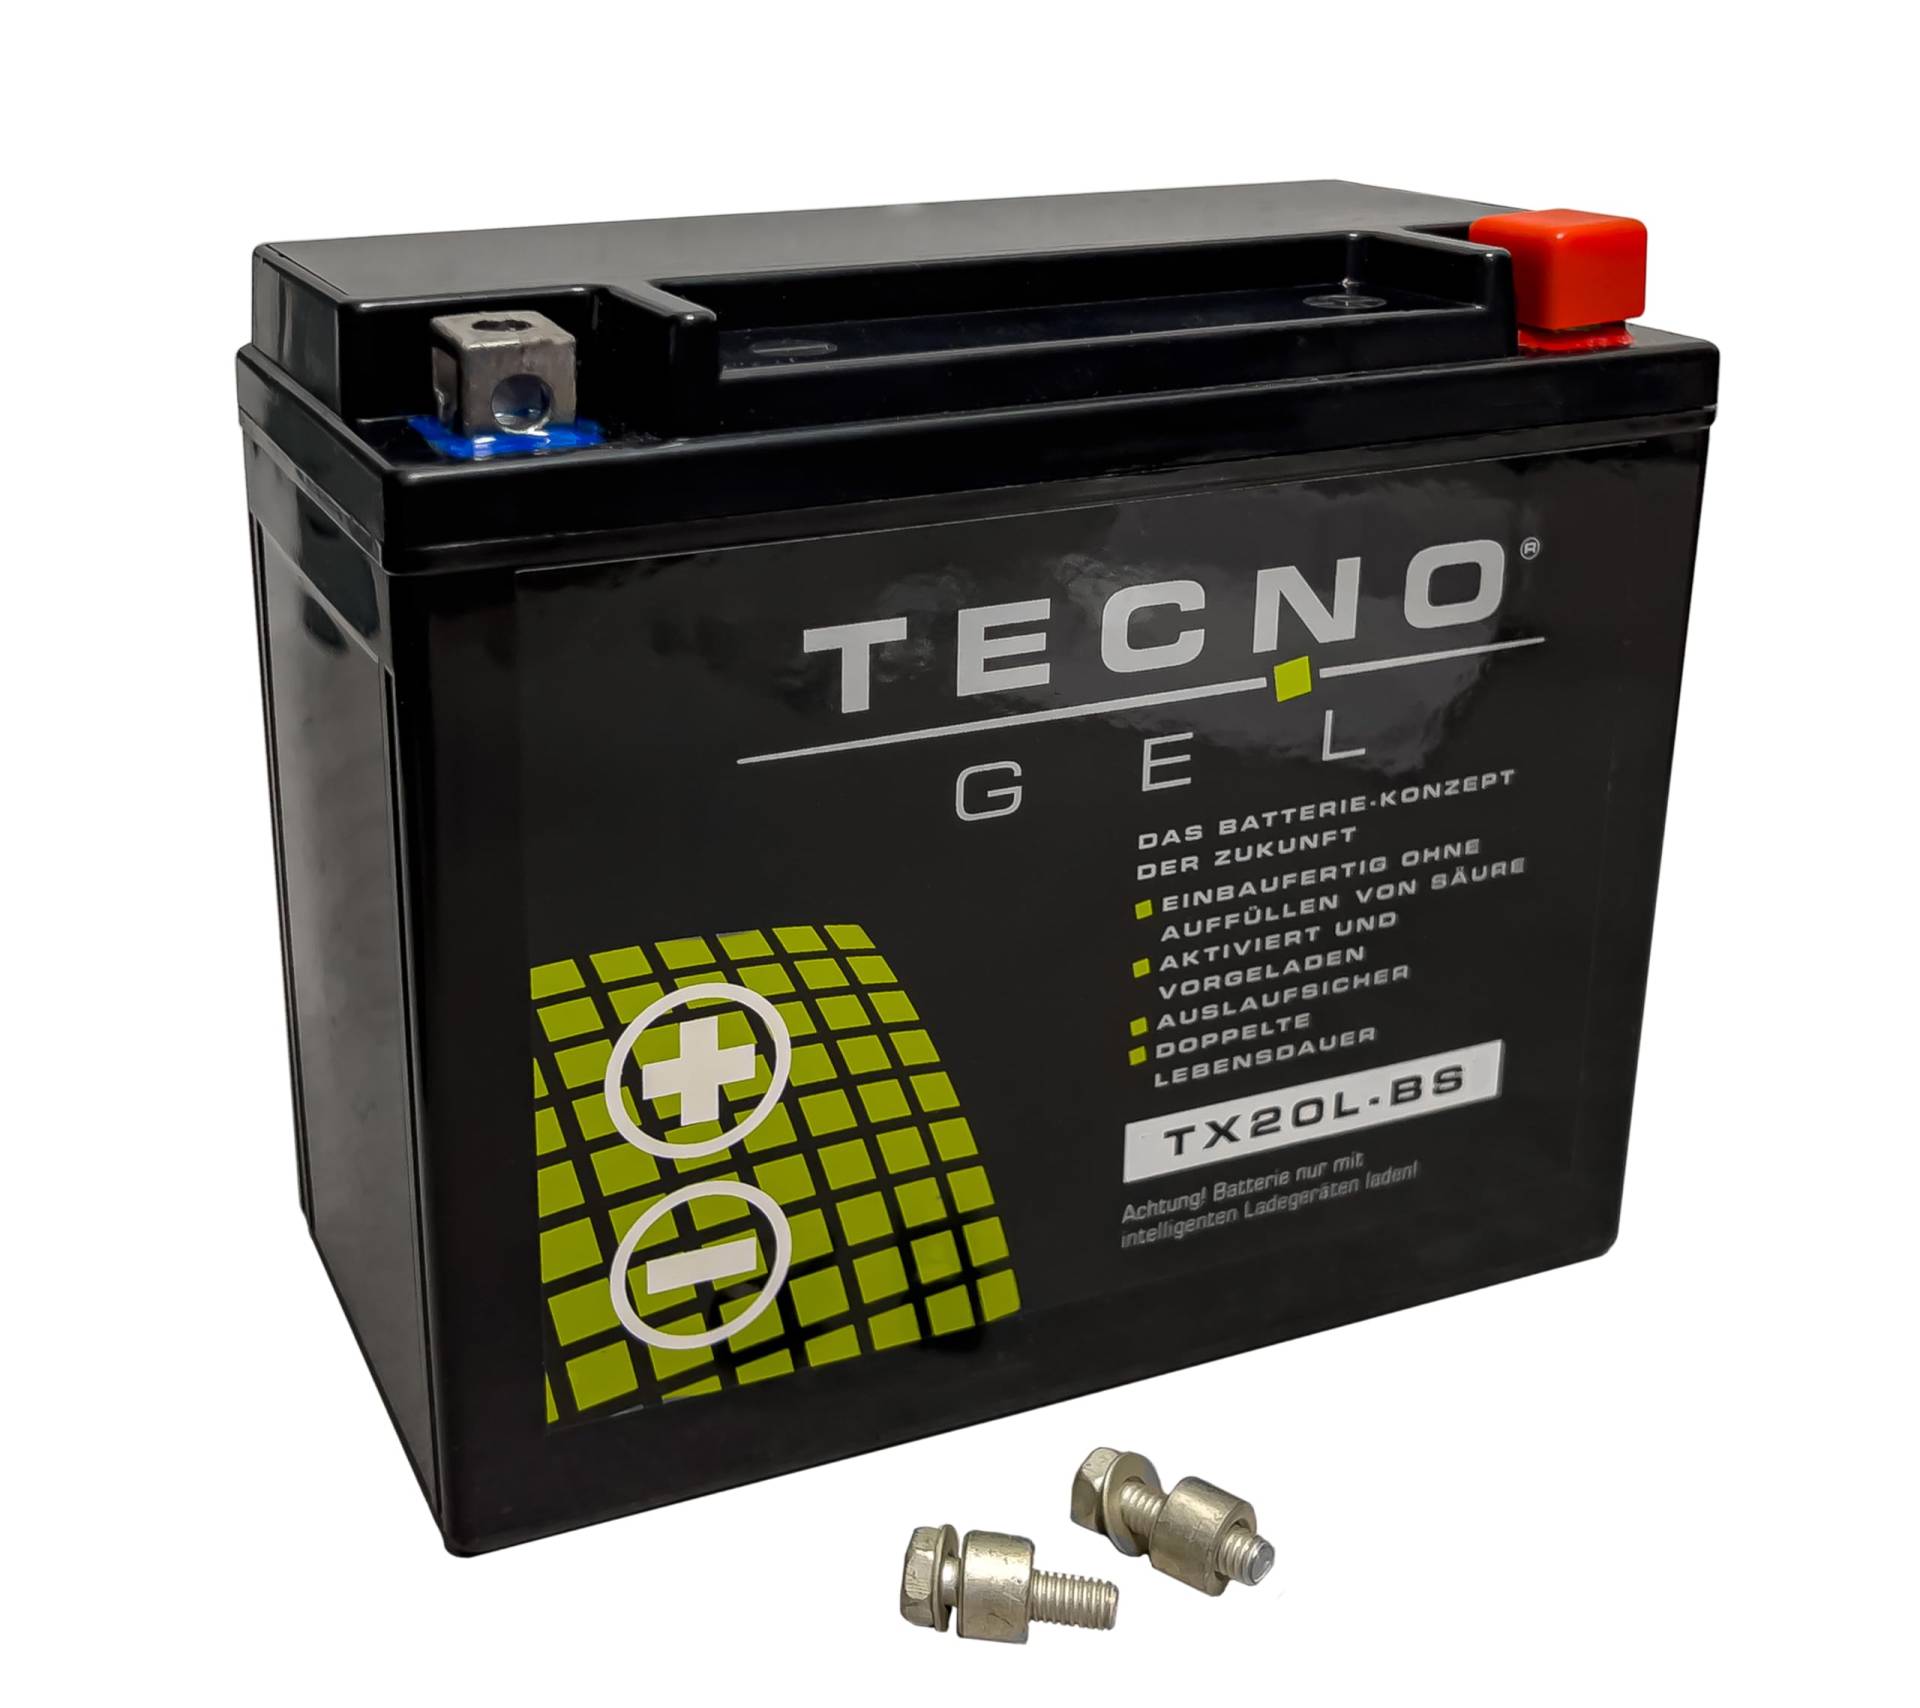 TECNO-GEL Motorrad-Batterie für YTX20L-BS für HARLEY DAVIDSON FLSTS 1340/1450/1584/1690 Heritage Softail 1997-2012, 12V Gel-Batterie 20Ah (DIN 82000), 175x87x155 mm von Wirth-Federn